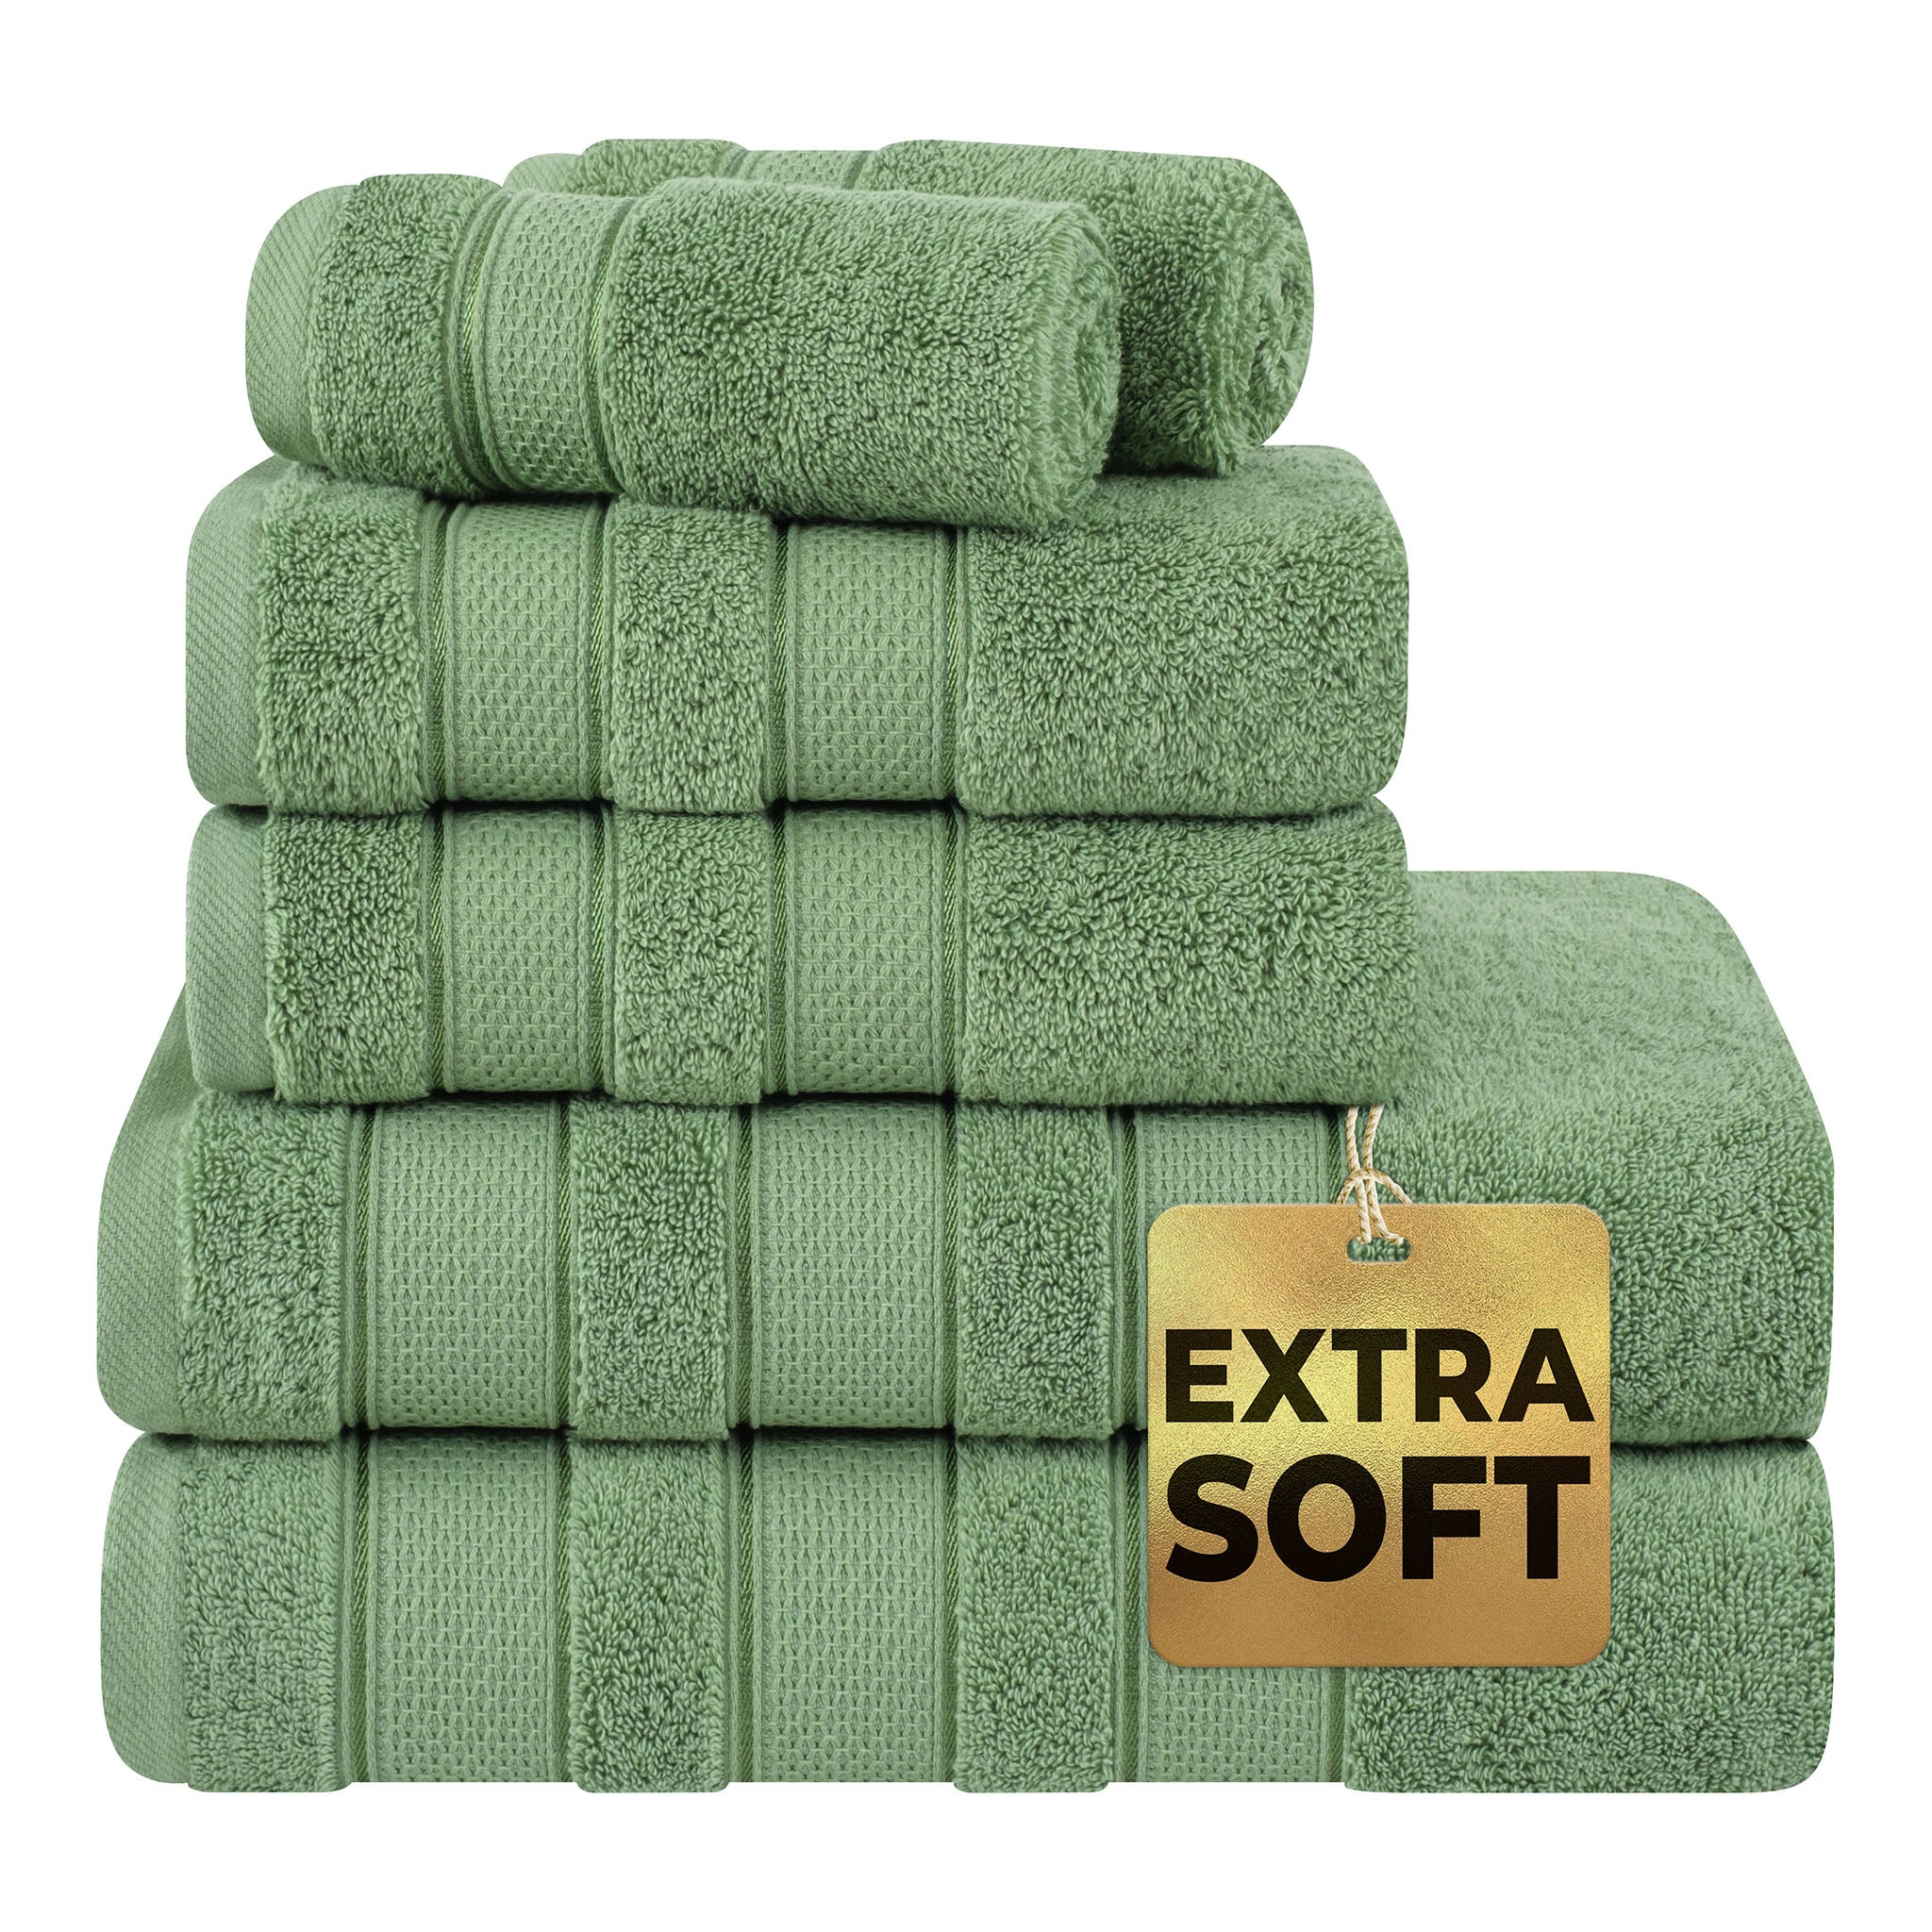  Market & Place 100% Cotton Super Soft Luxury Towel Set